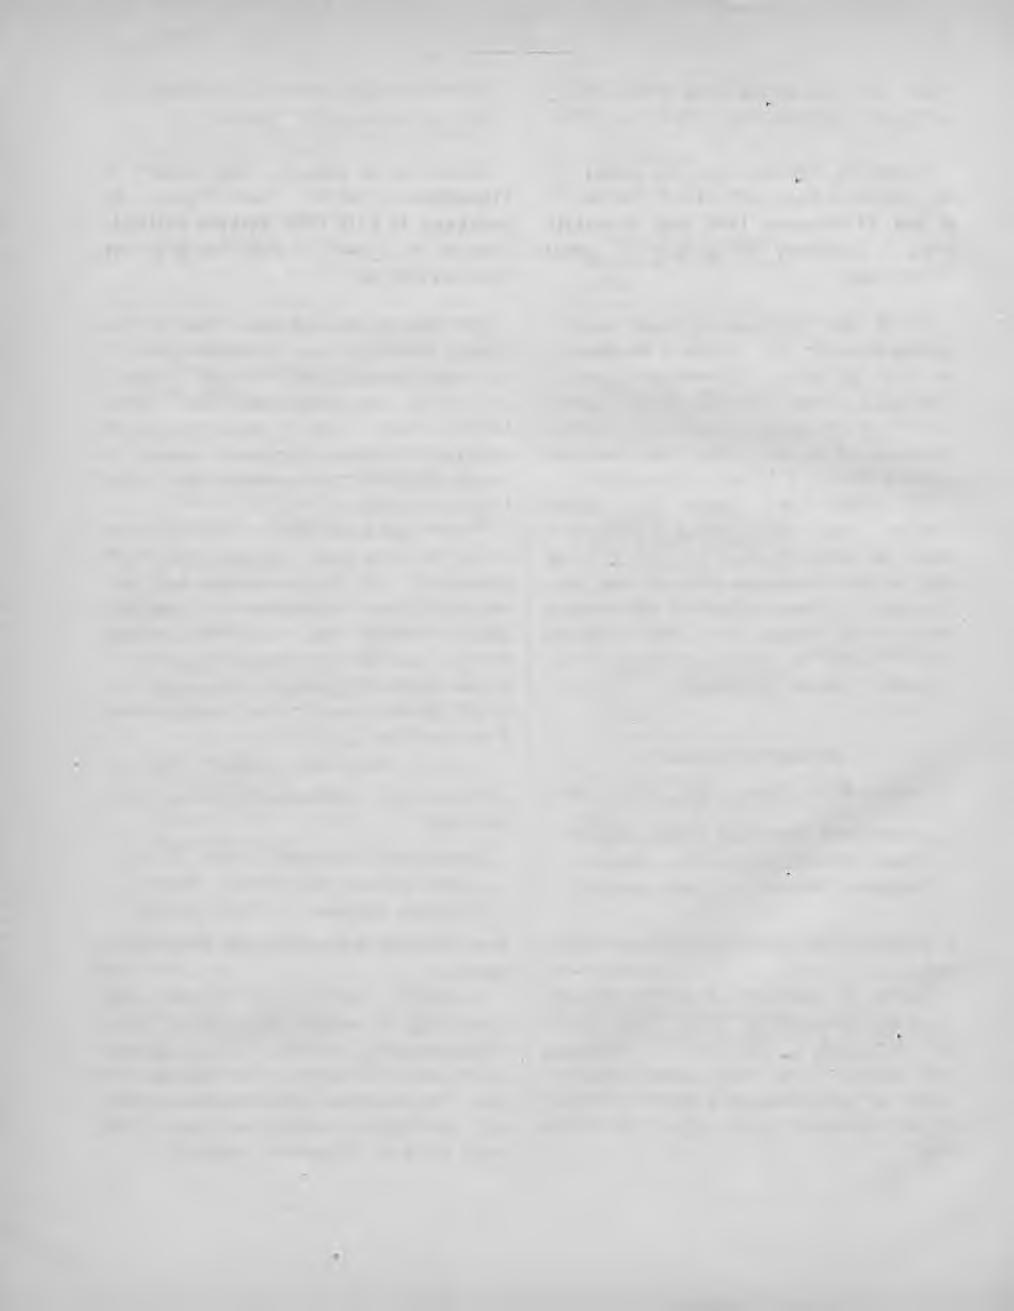 4 Chefens för Öfverstyrelsen för posten oclt telegraferna i Kejsaredömet cirkulär n:o 112 af (len 22 december 1898, angående från utlandet jemte dupletter af adresskort och tulldeklarationer ankomna